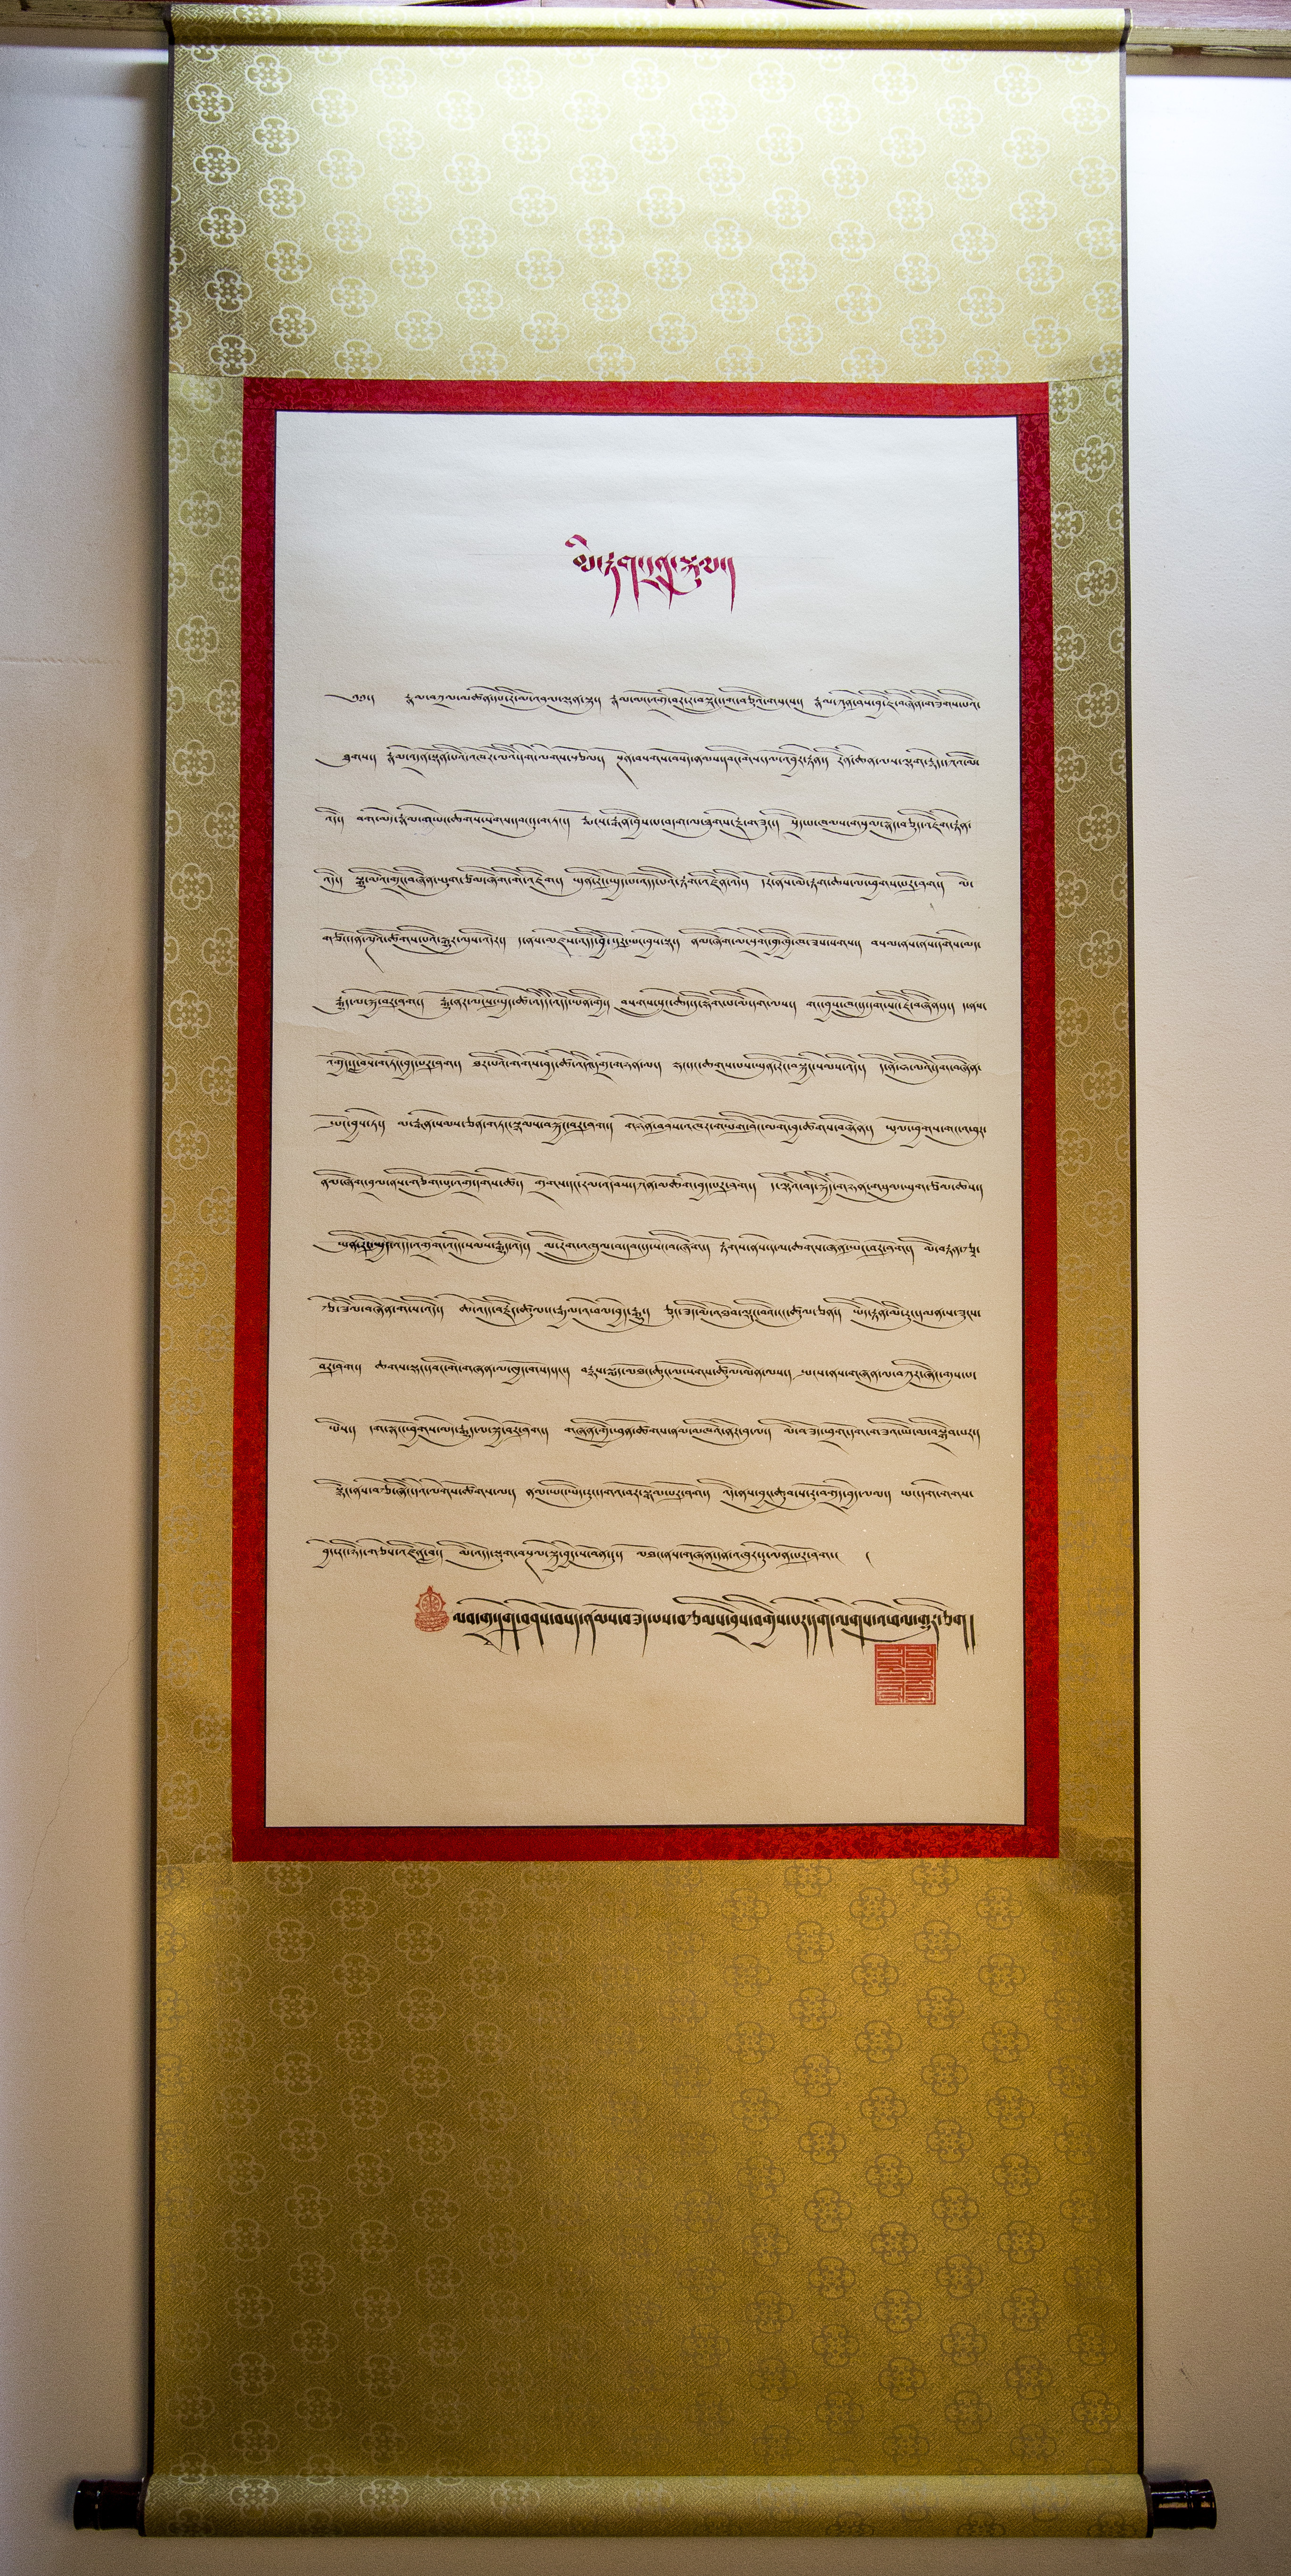 藏文书法图片 第一名图片